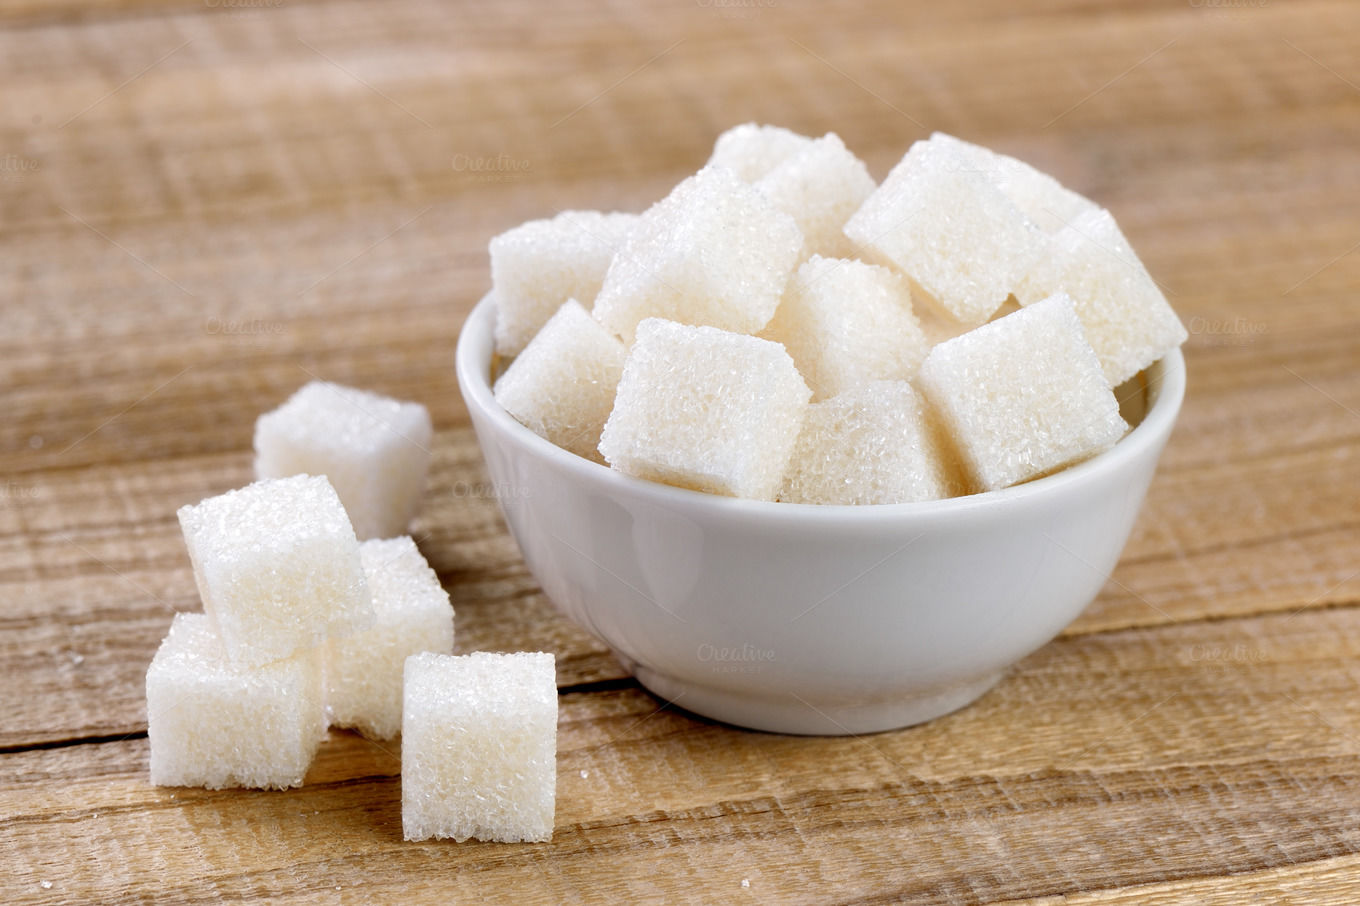 Диабет и сахар: может ли чрезмерное употребление сладостей спровоцировать болезнь